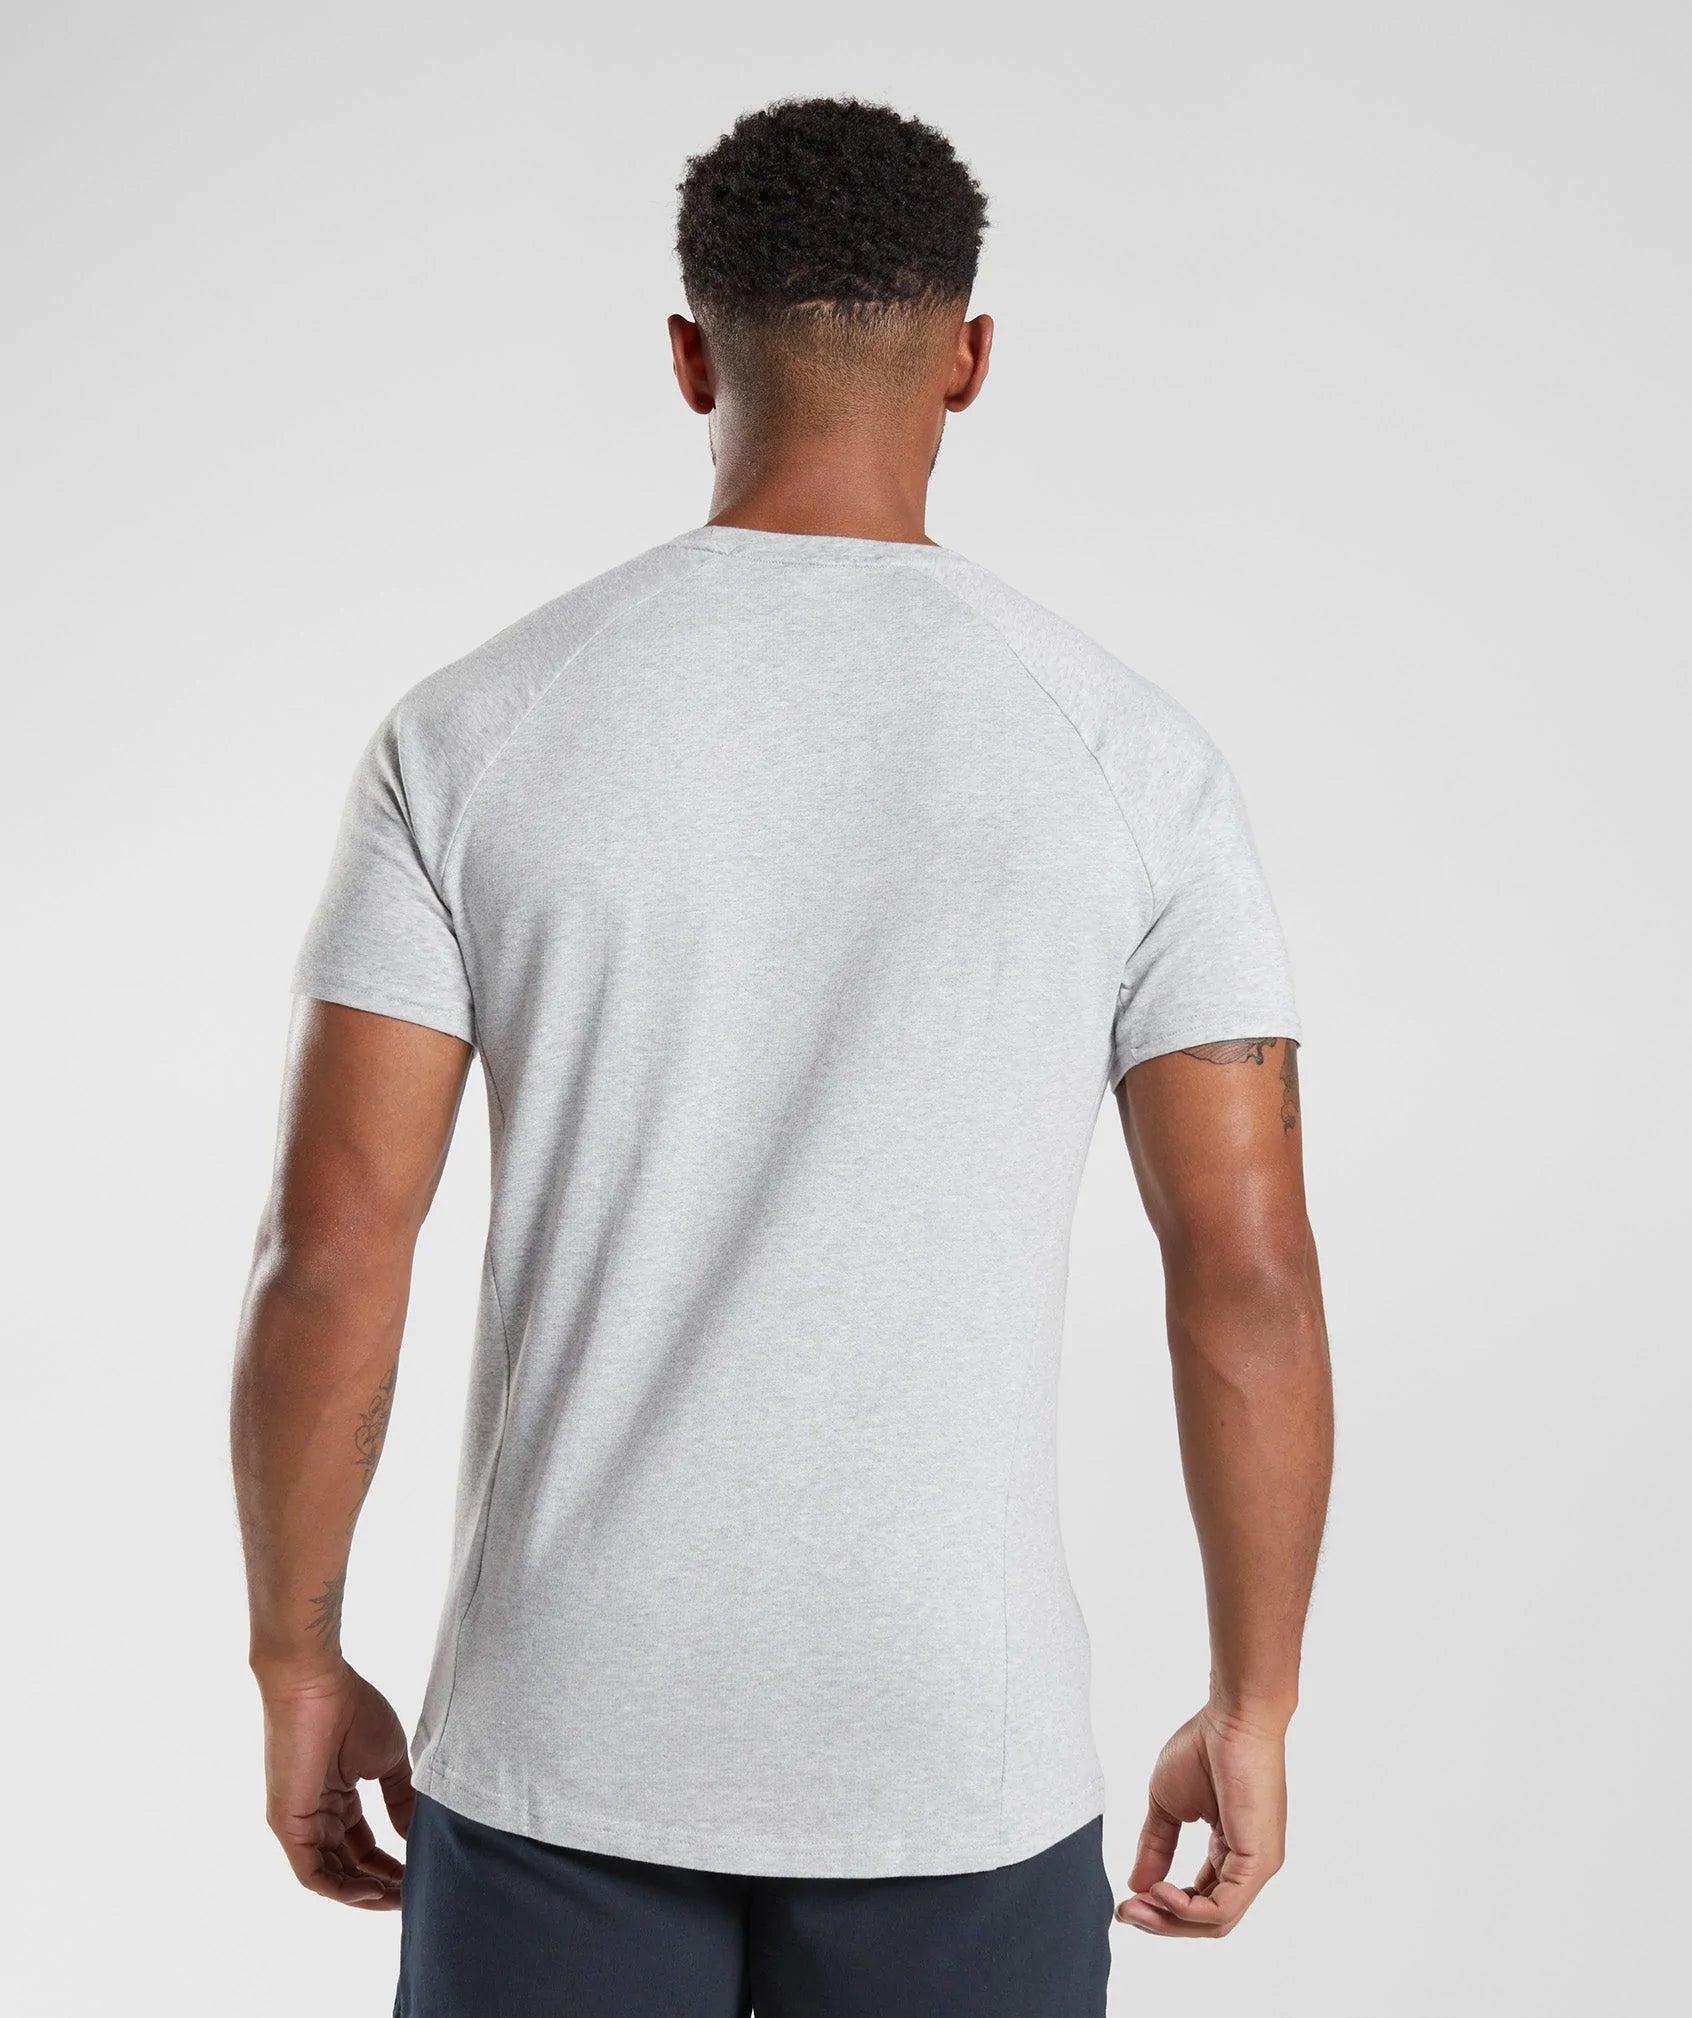 React T-Shirt in Light Grey Core Marl - view 2